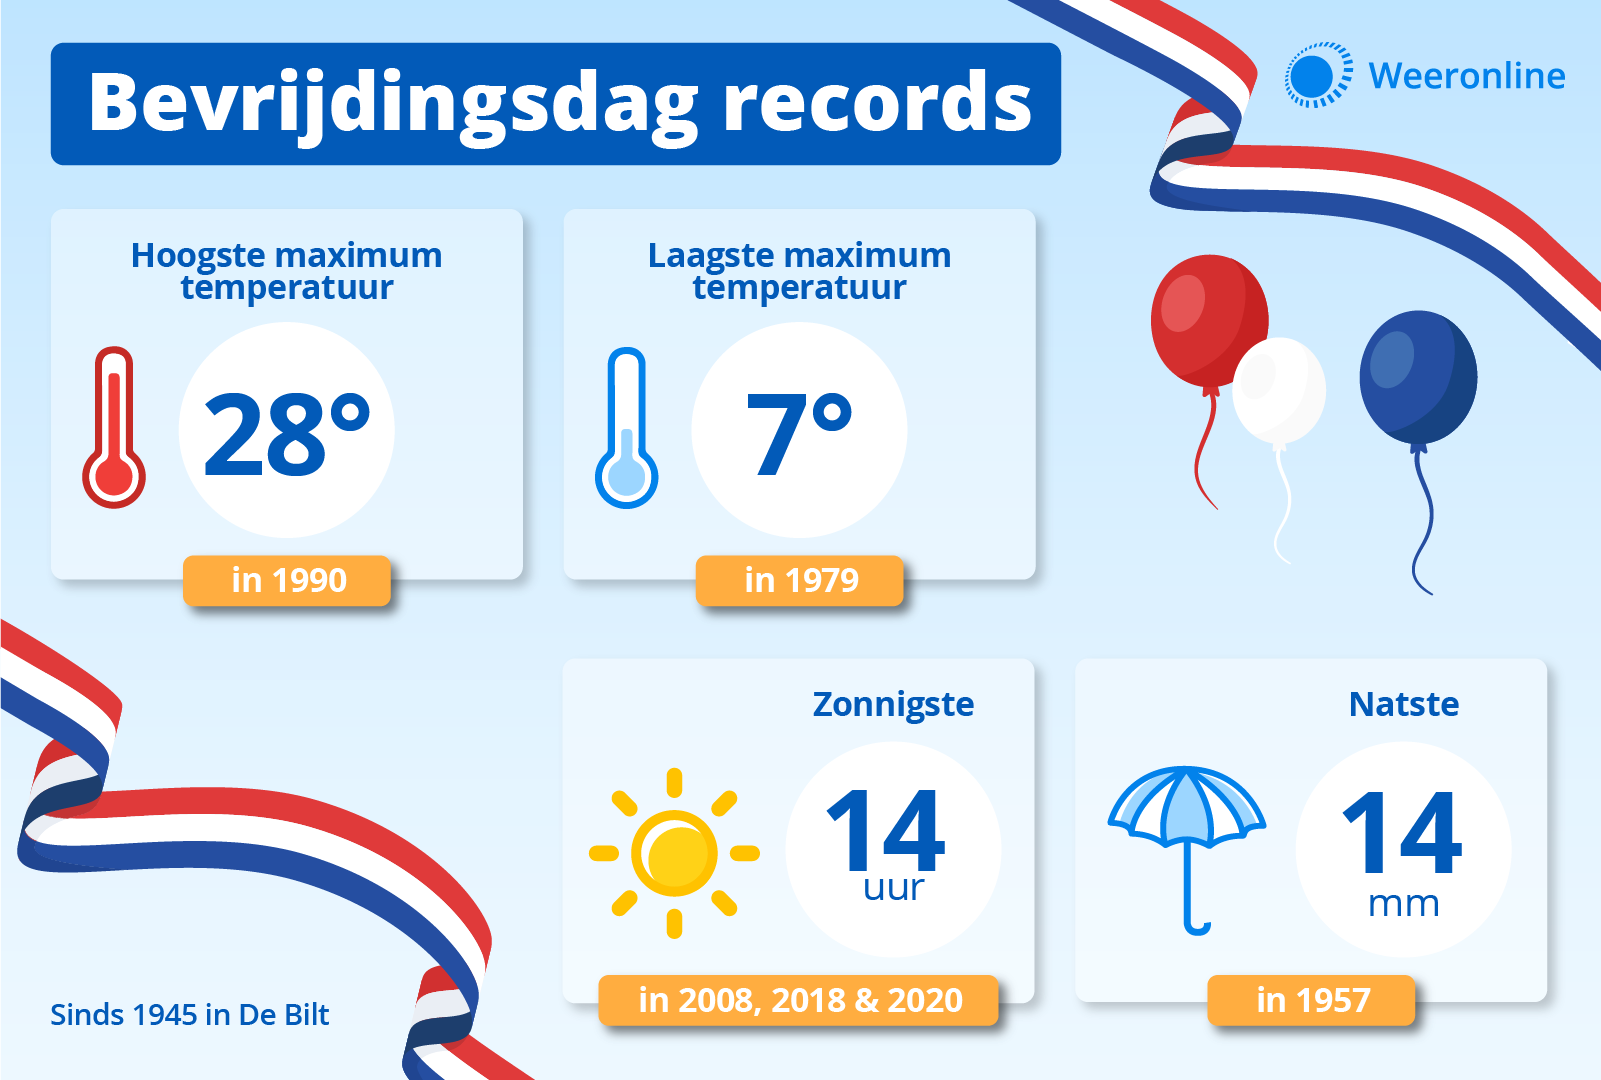 De records van Bevrijdingsdag sinds 1945 in De Bilt